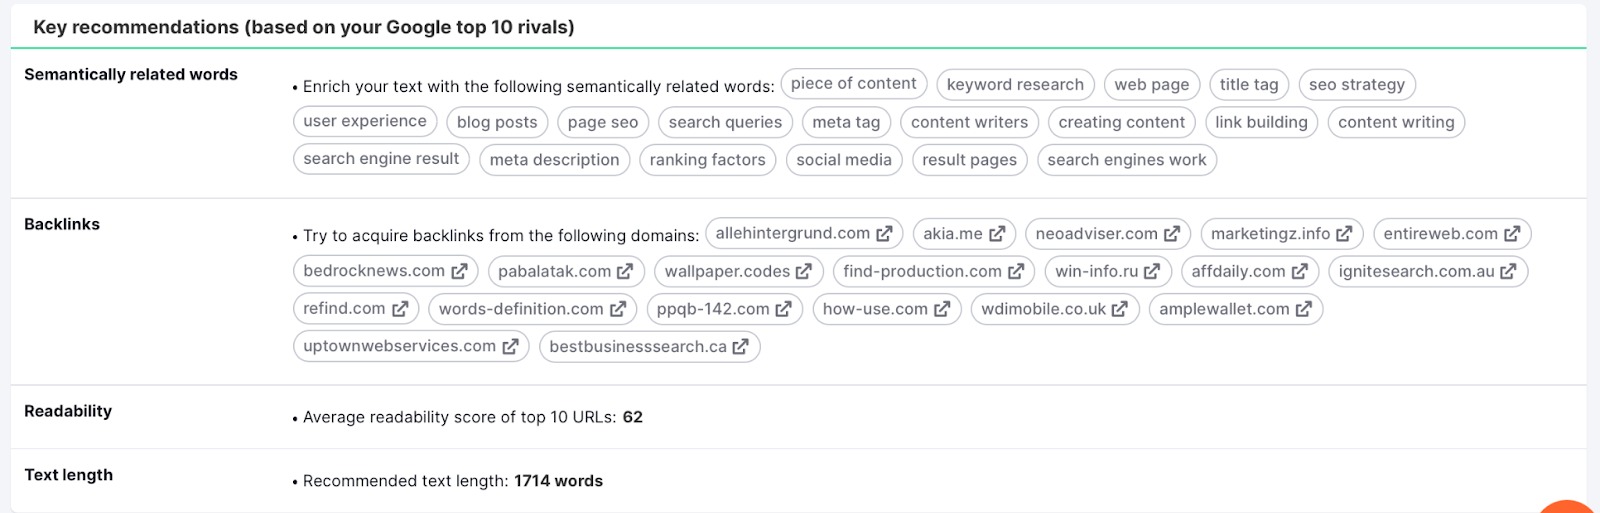 Herramienta SEO Content Template. Las principales recomendaciones en función de tus 10 principales rivales en Google para palabras relacionadas semánticamente, backlinks, legibilidad y extensión del texto. 